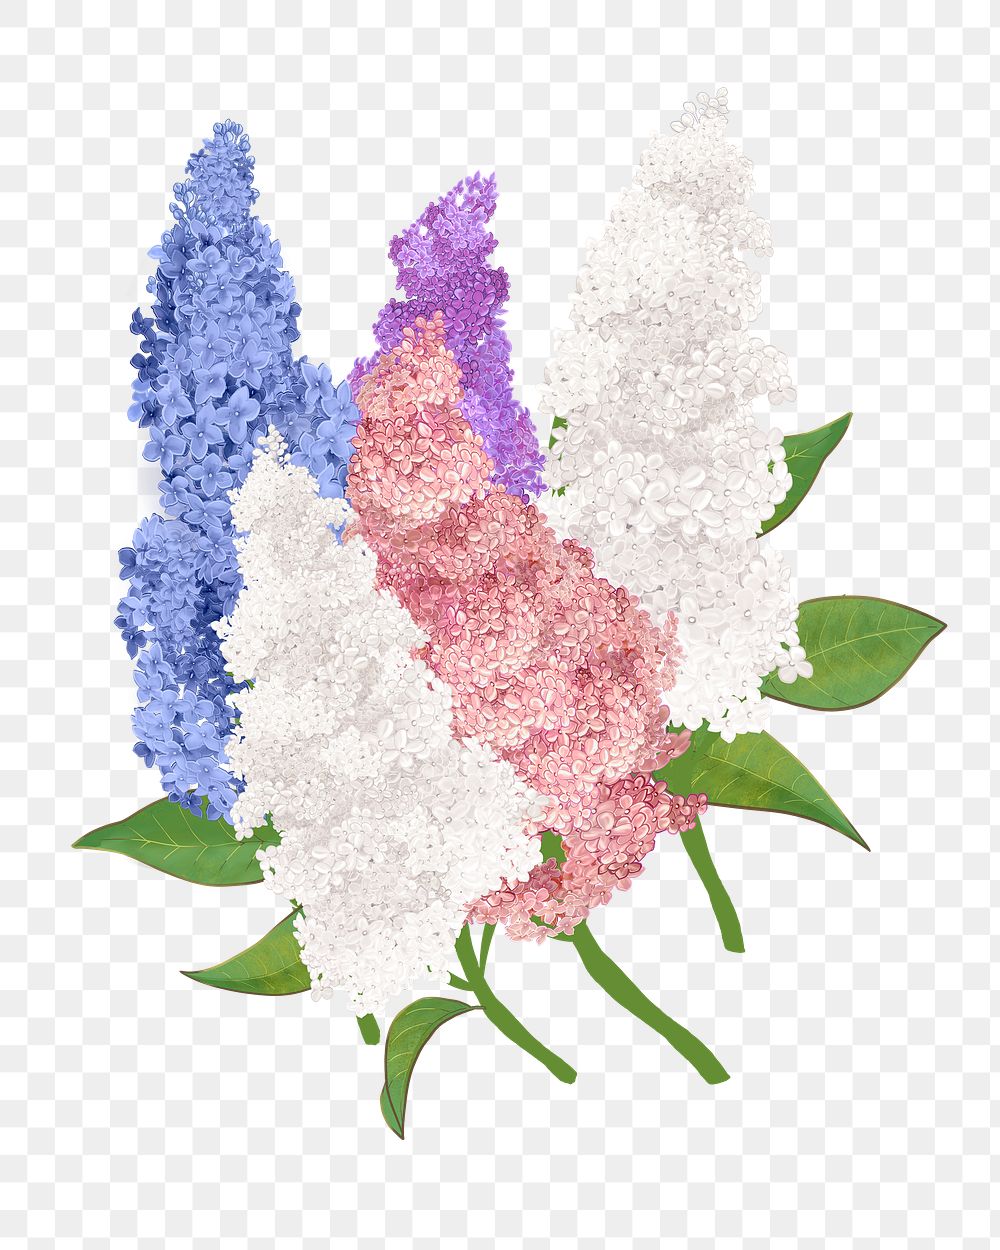 Lilacs png flower sticker illustration, transparent background